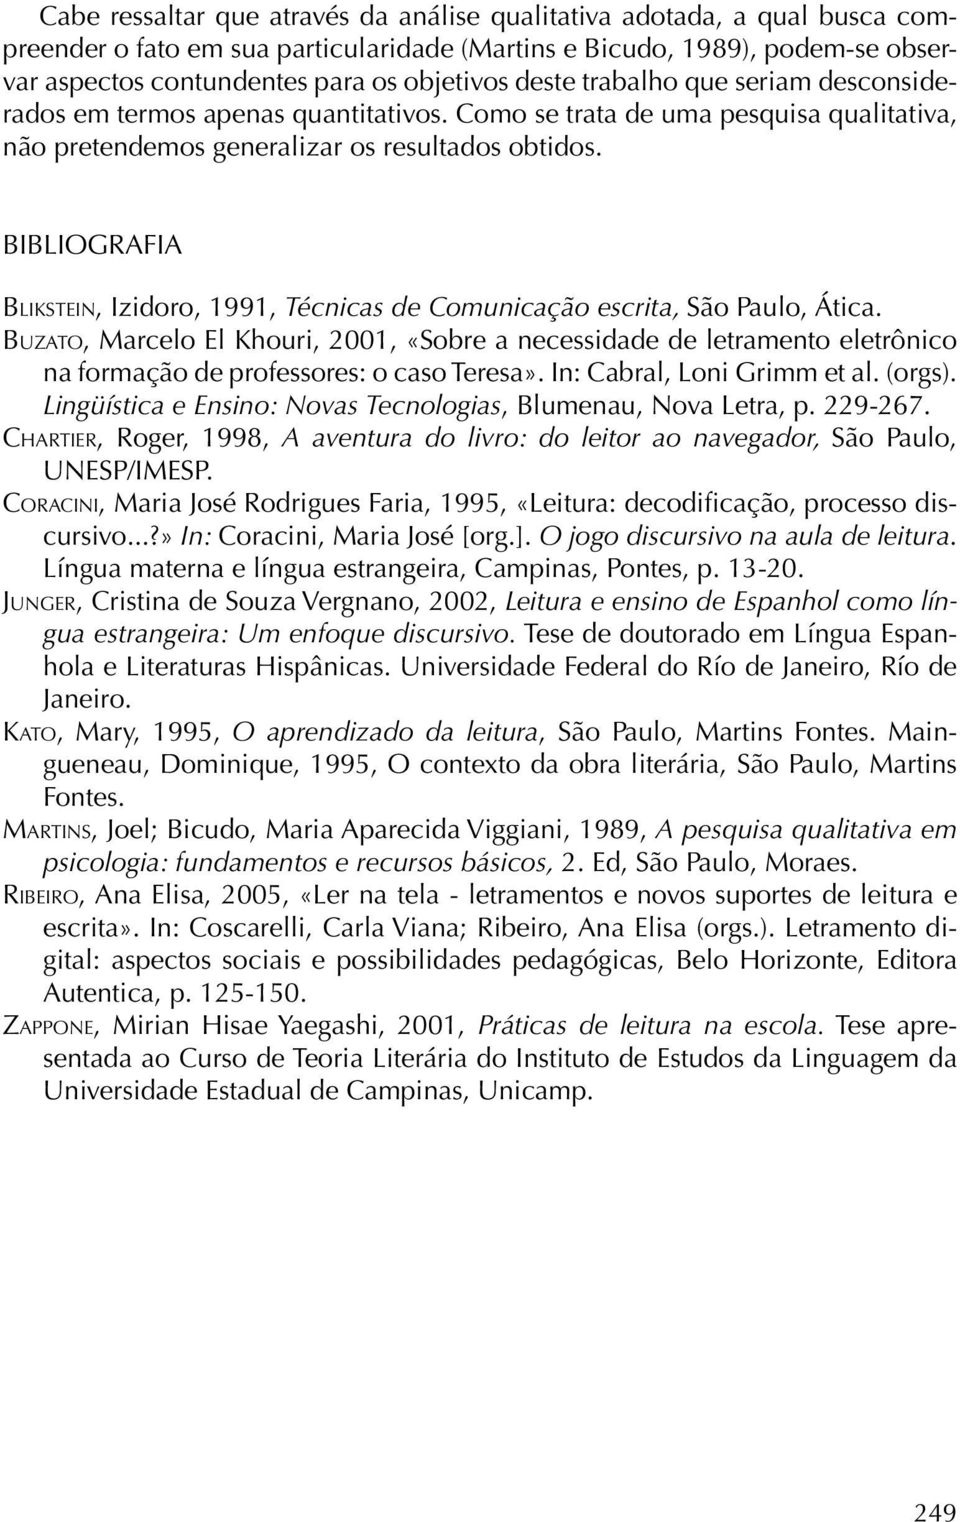 BIBLIOGRAFIA Blikstein, Izidoro, 1991, Técnicas de Comunicação escrita, São Paulo, Ática.